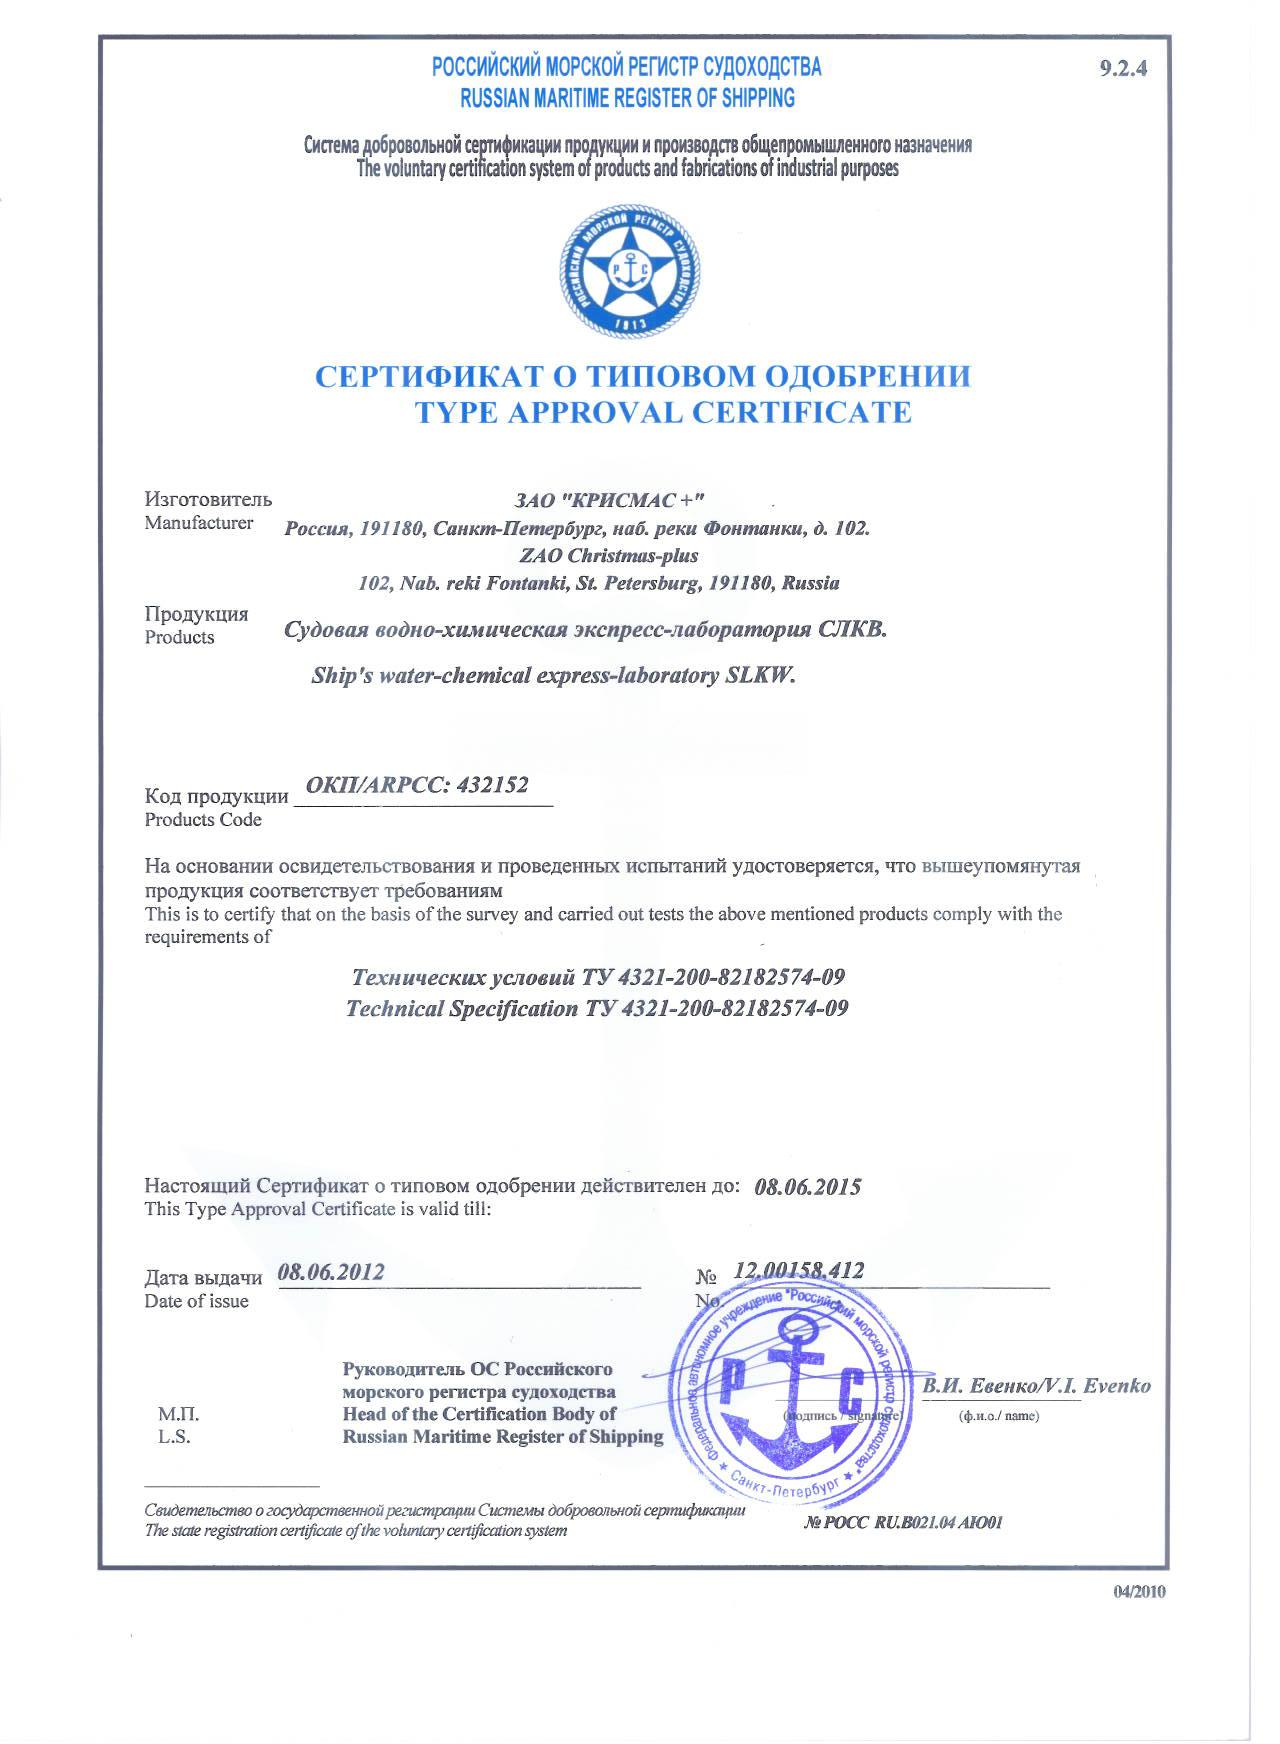 ЗАО «Крисмас+» обновило сертификаты на производимые судовые лаборатории «СЛКВ» и «СЛТМ»